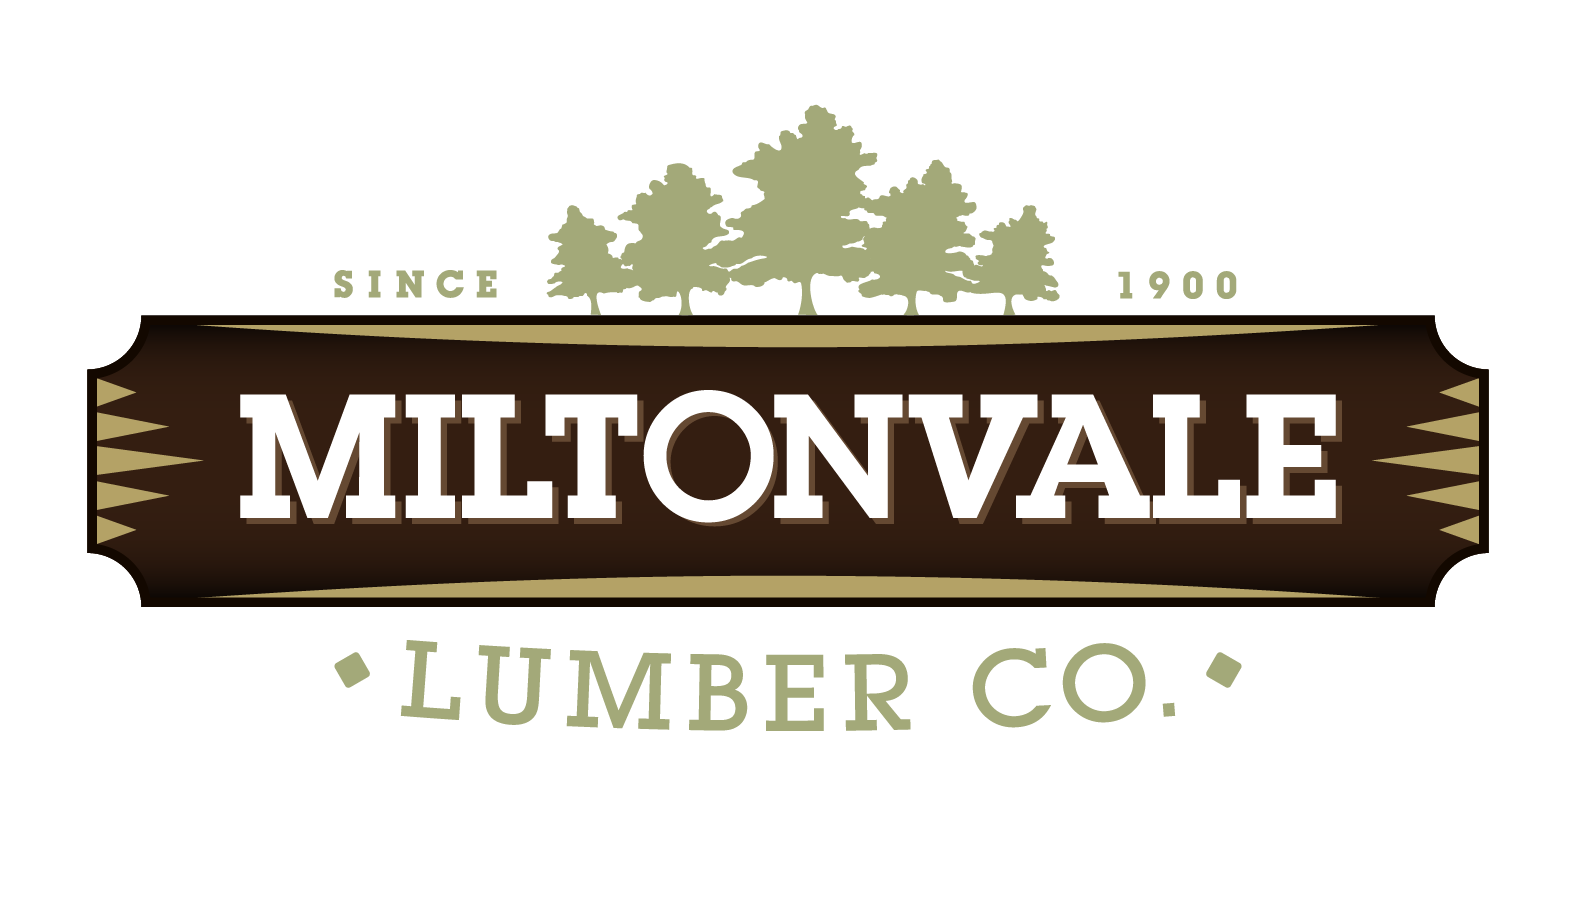 Miltonvale Lumber Co Logo 2020 - White